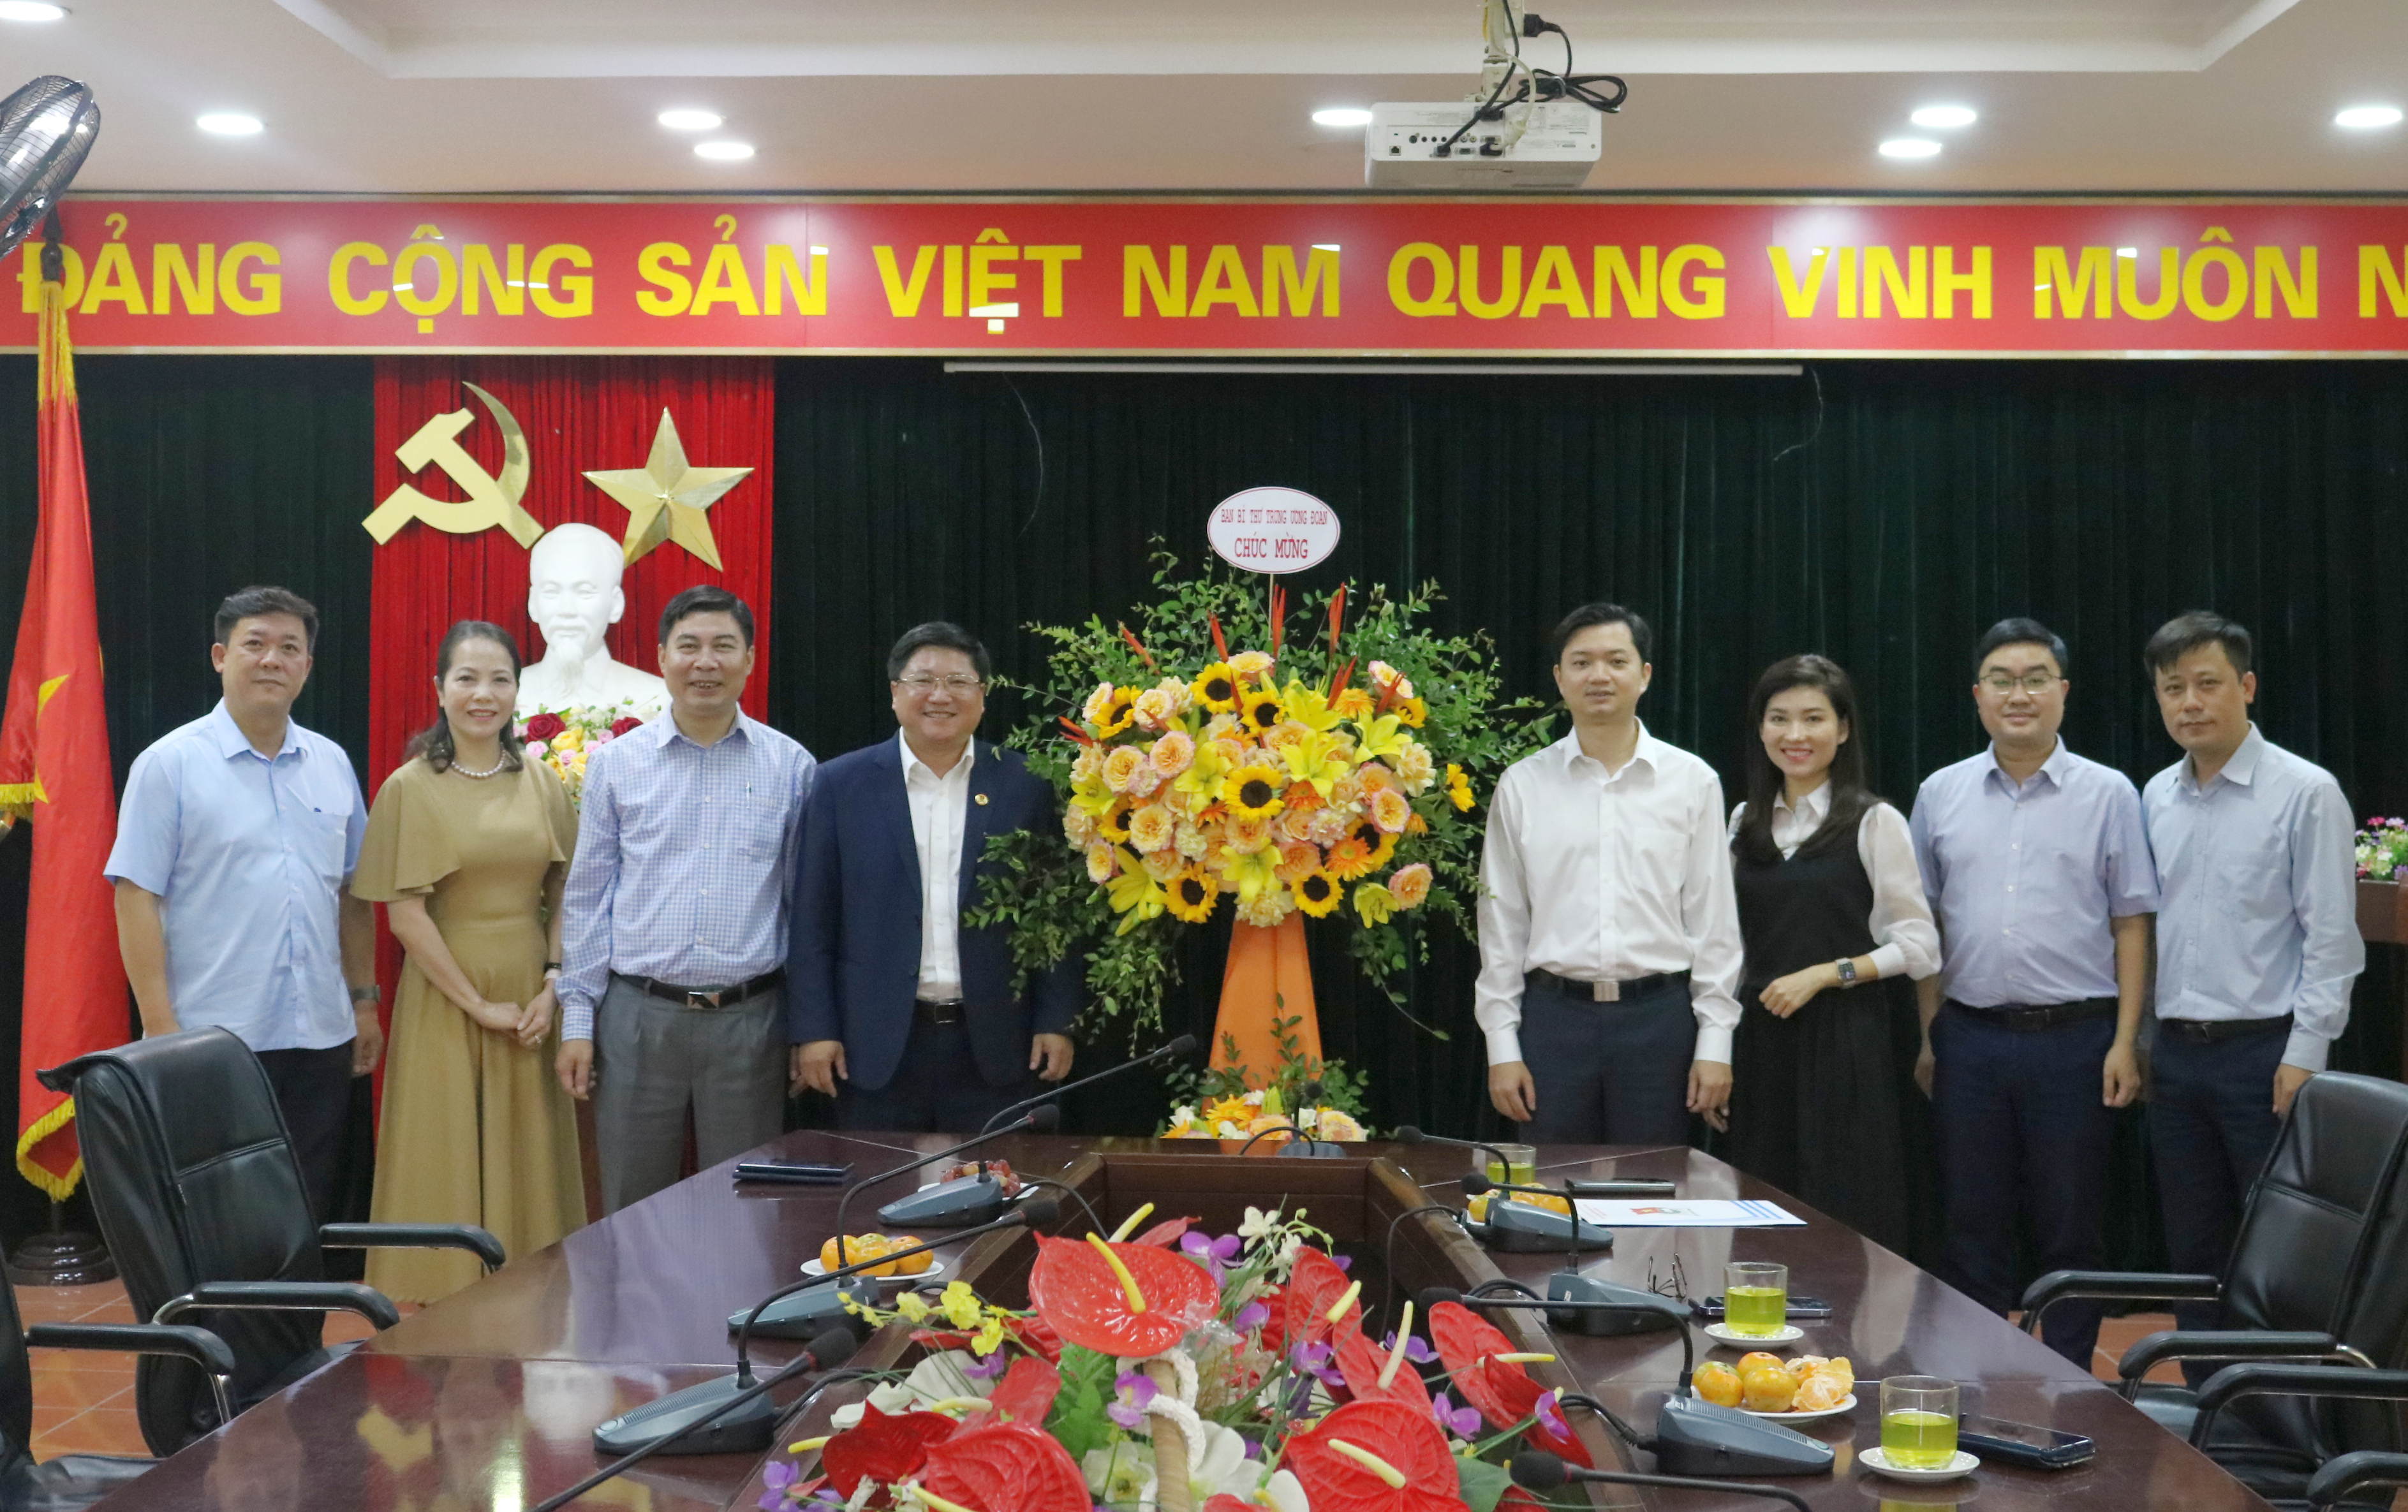 Học viện Thanh thiếu niên Việt Nam, 2024: Học viện Thanh thiếu niên Việt Nam năm 2024 đã phát triển đáng kể về cơ sở vật chất và chất lượng giáo dục. Học viện đang trở thành một trung tâm đào tạo trẻ tiềm năng cho xã hội, giúp đẩy mạnh quá trình phát triển và khẳng định vị thế của Việt Nam trên trường quốc tế.